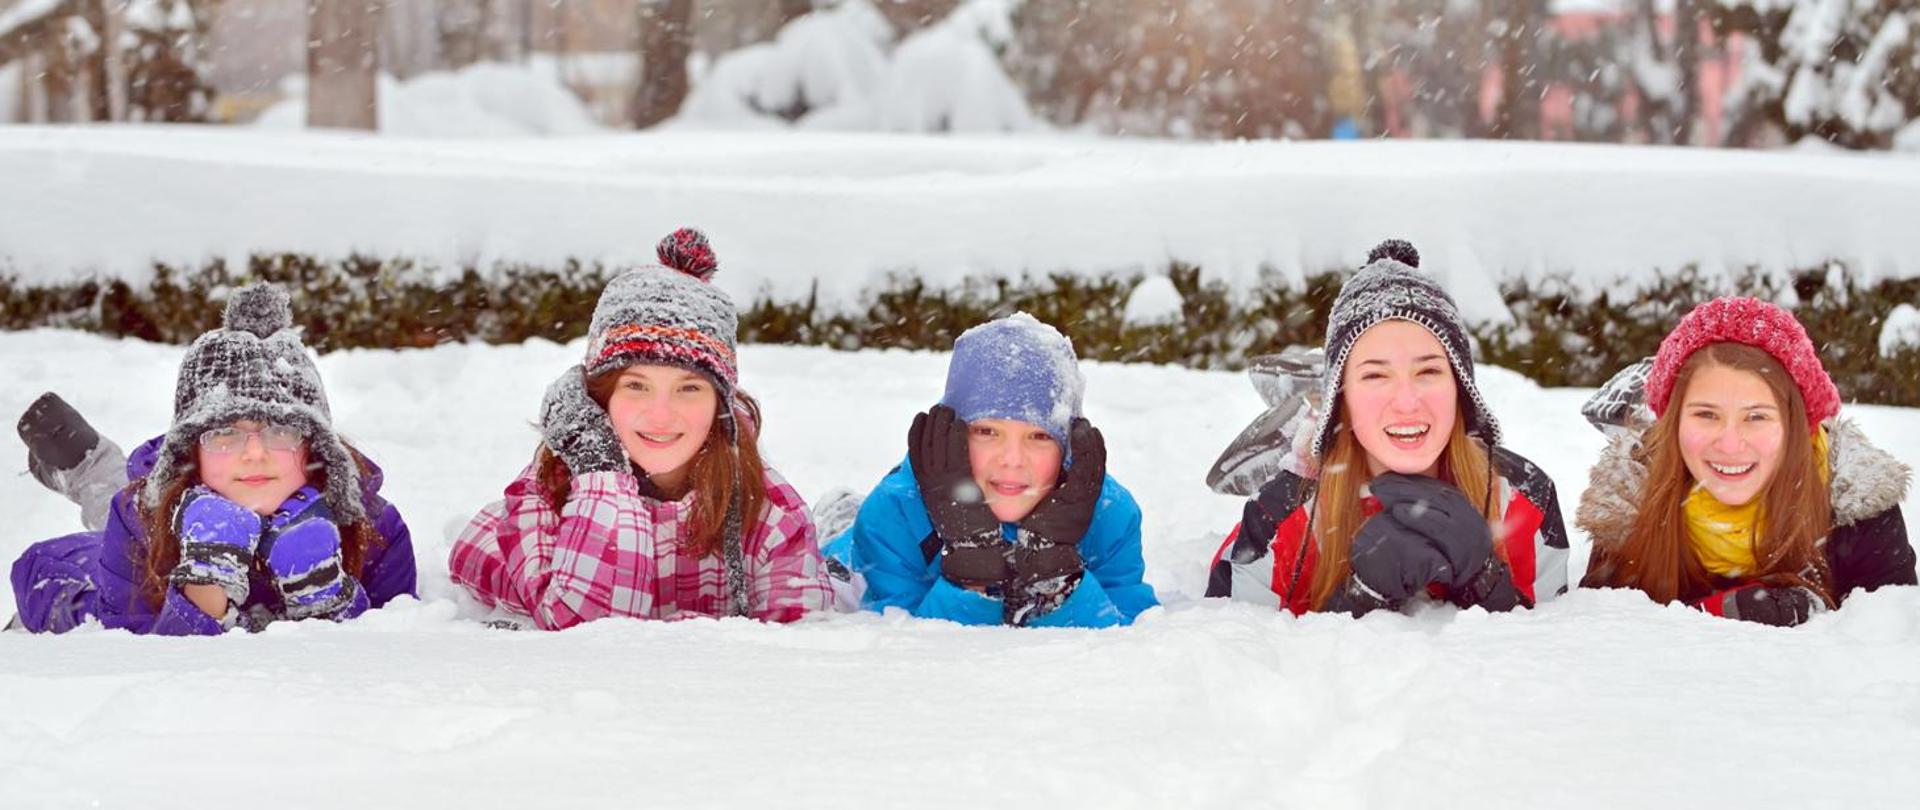 Grupa dzieci bawiąca się w śniegu zimą